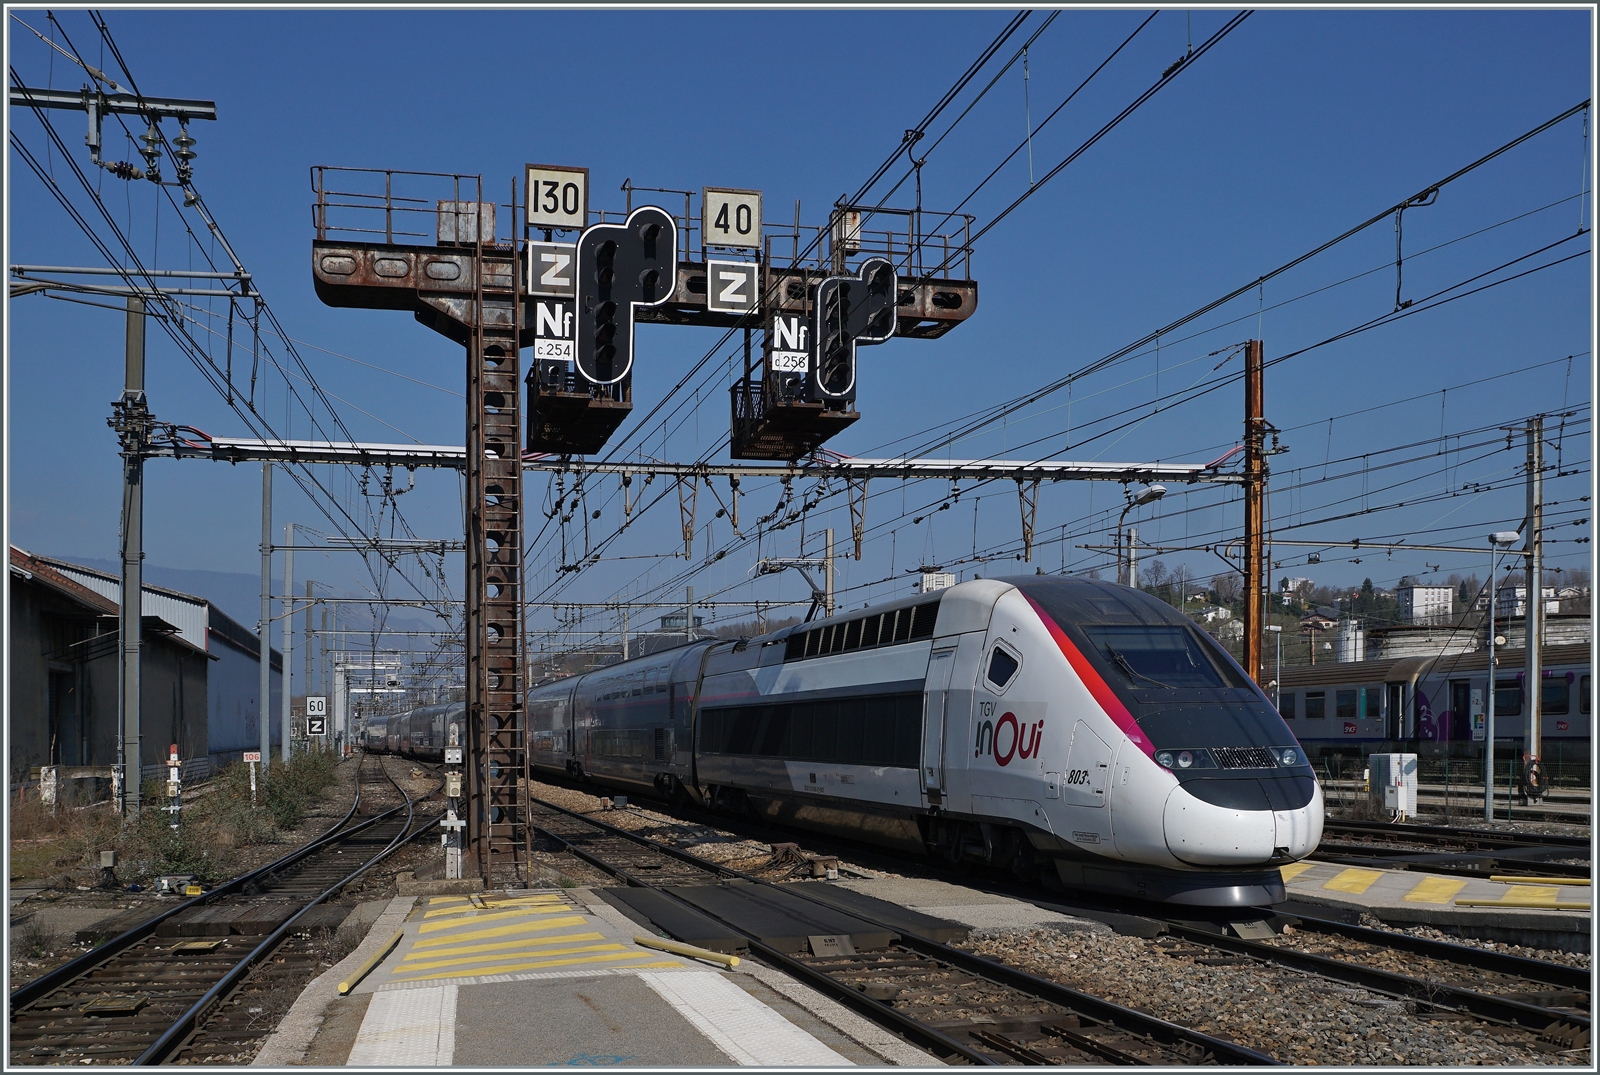 Diese kleine SNCF Bildserie wäre unvollständig, würde nicht auch ein SNCF TGV zu sehen sein! Die Wahl fiel auf den SNCF TGV Duplex mit dem Triebkopf 803 der unter der Frankreich typischen massiven Signalbrücke den Bahnhof von Chambéry-Challes-les-Eaux erreicht.

22. Marz 2022